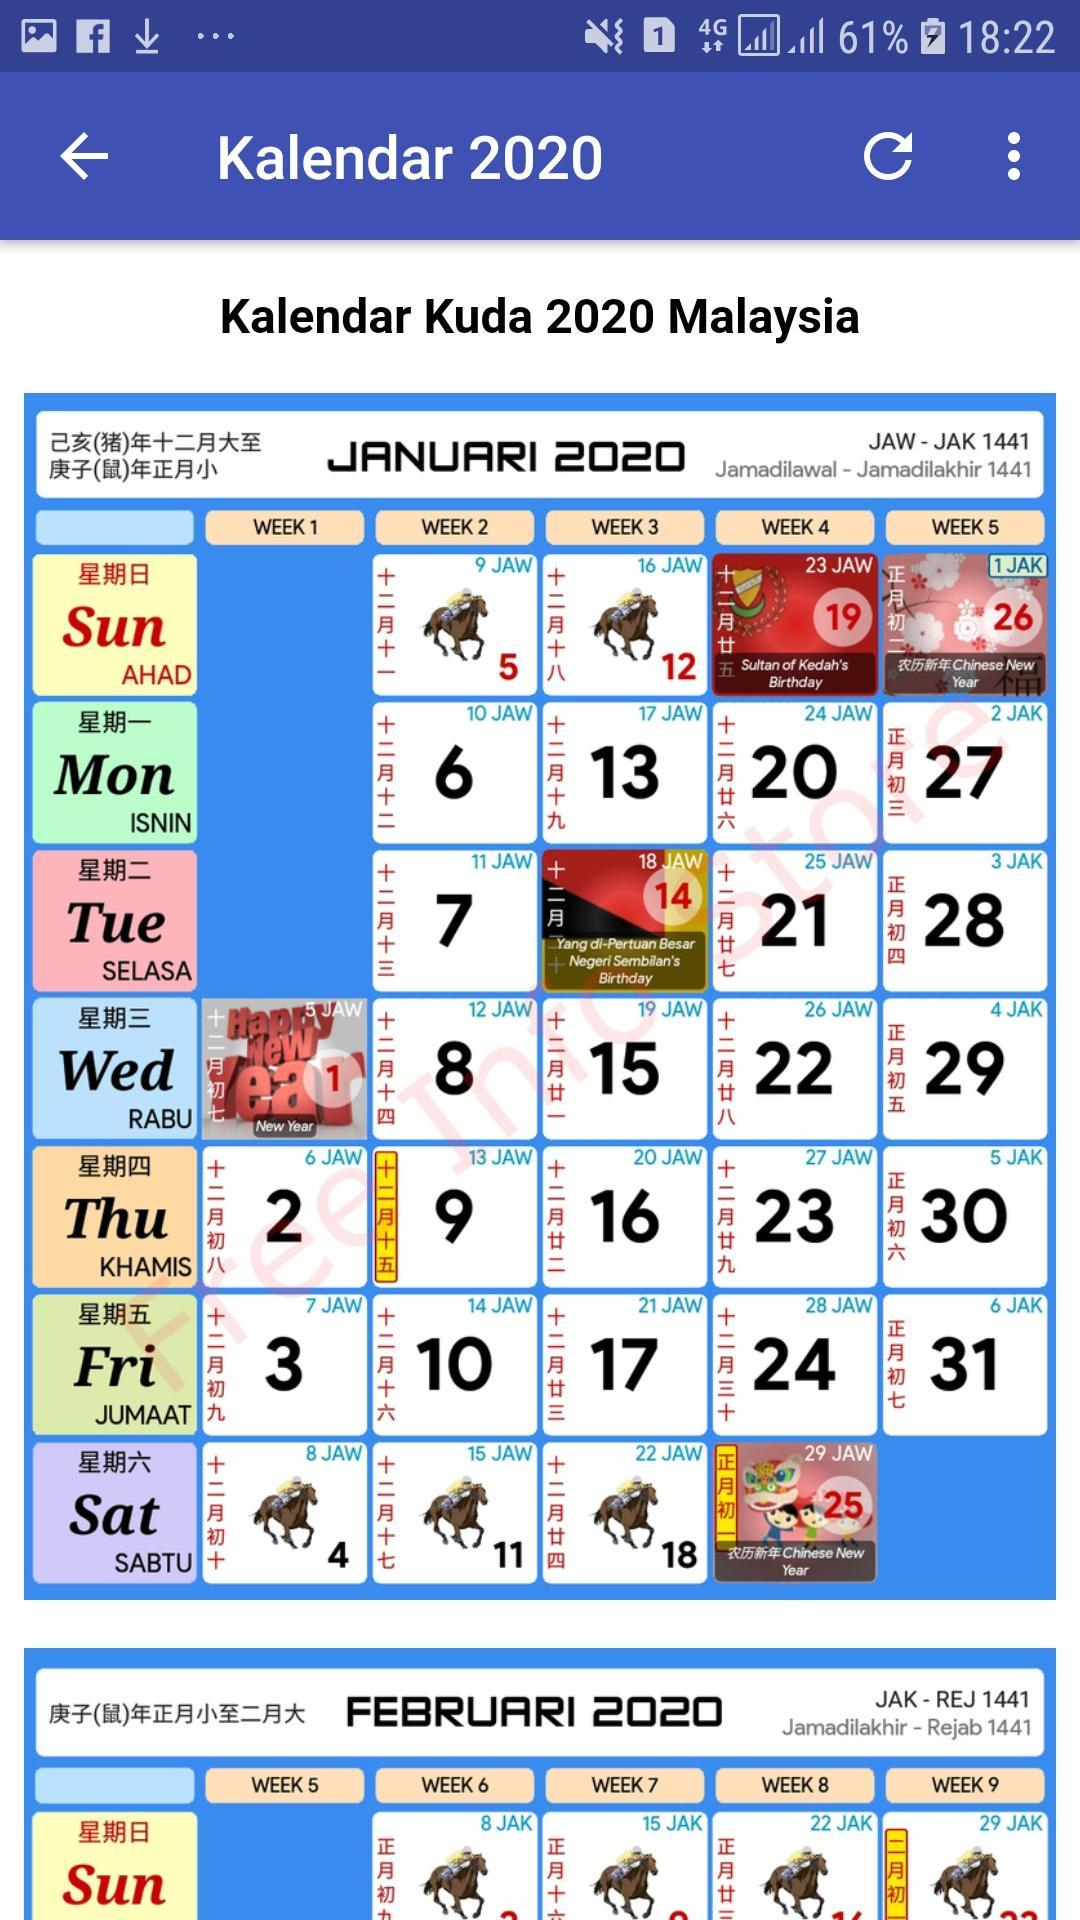 Kalendar Kuda 2020 For Android  Apk Download within Malaysia Kuda Calendar 2020